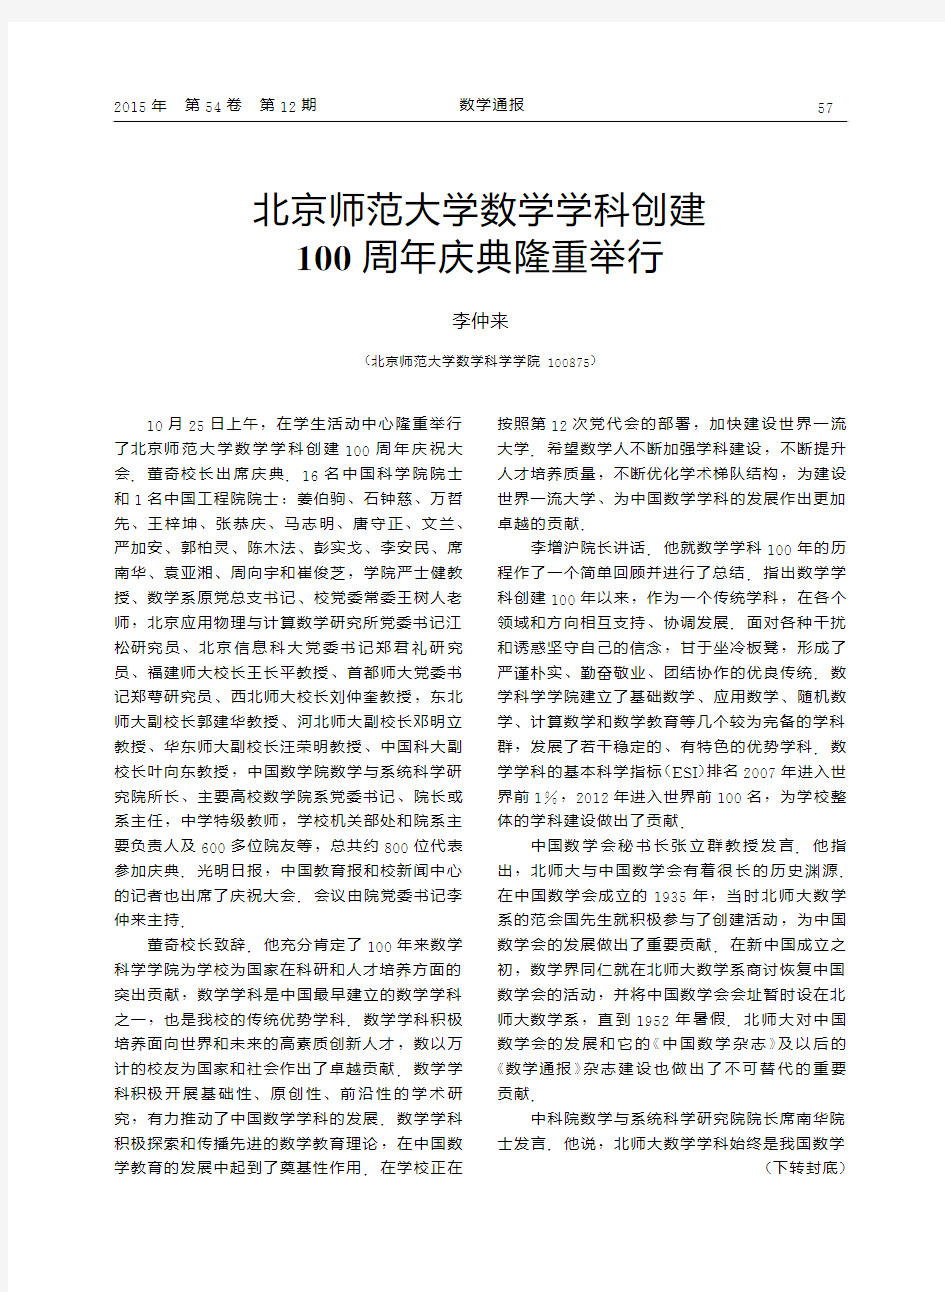 北京师范大学数学学科创建100周年庆典隆重举行